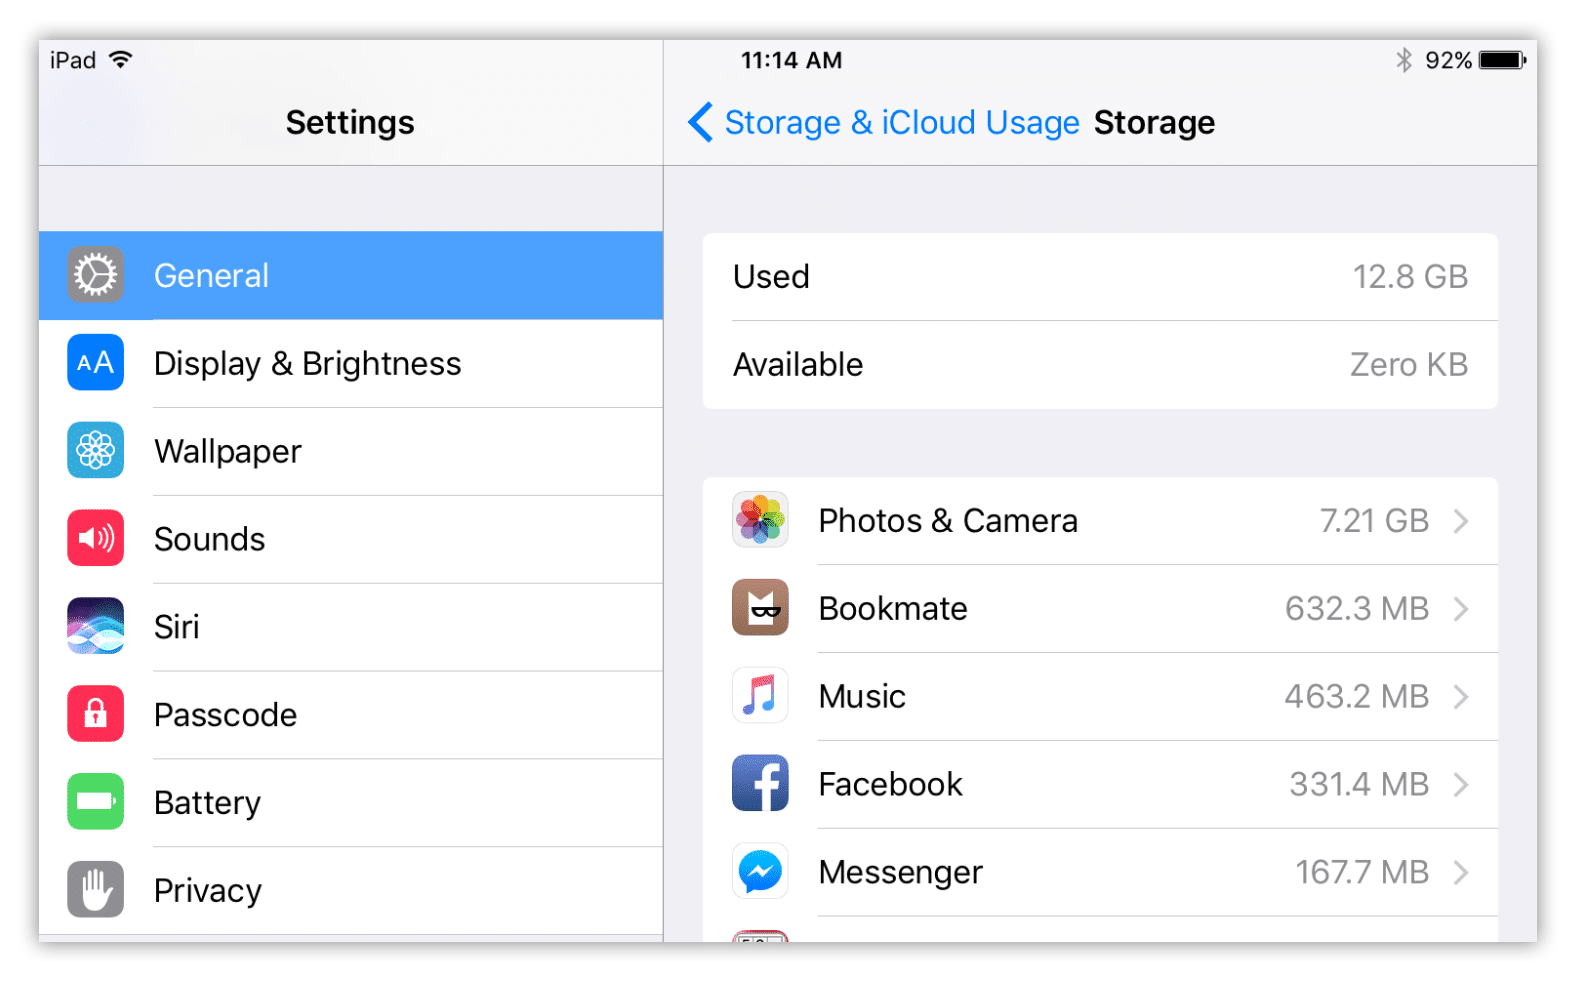 storage usage on iPad